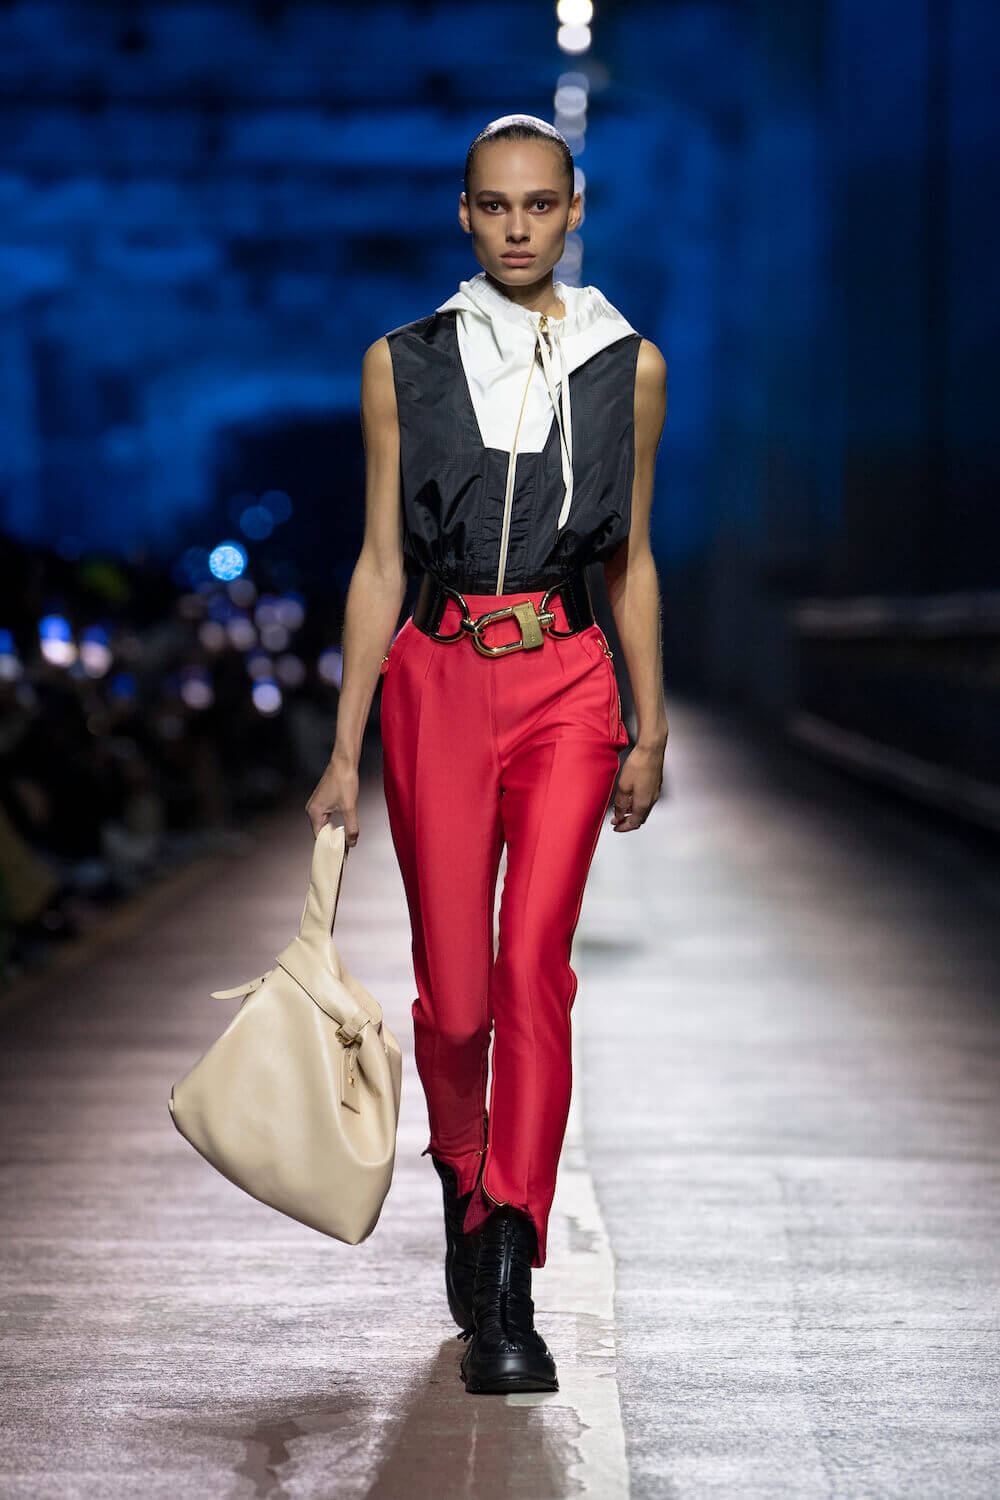 Louis Vuitton Sofia Coppola Leather Bag - '10s